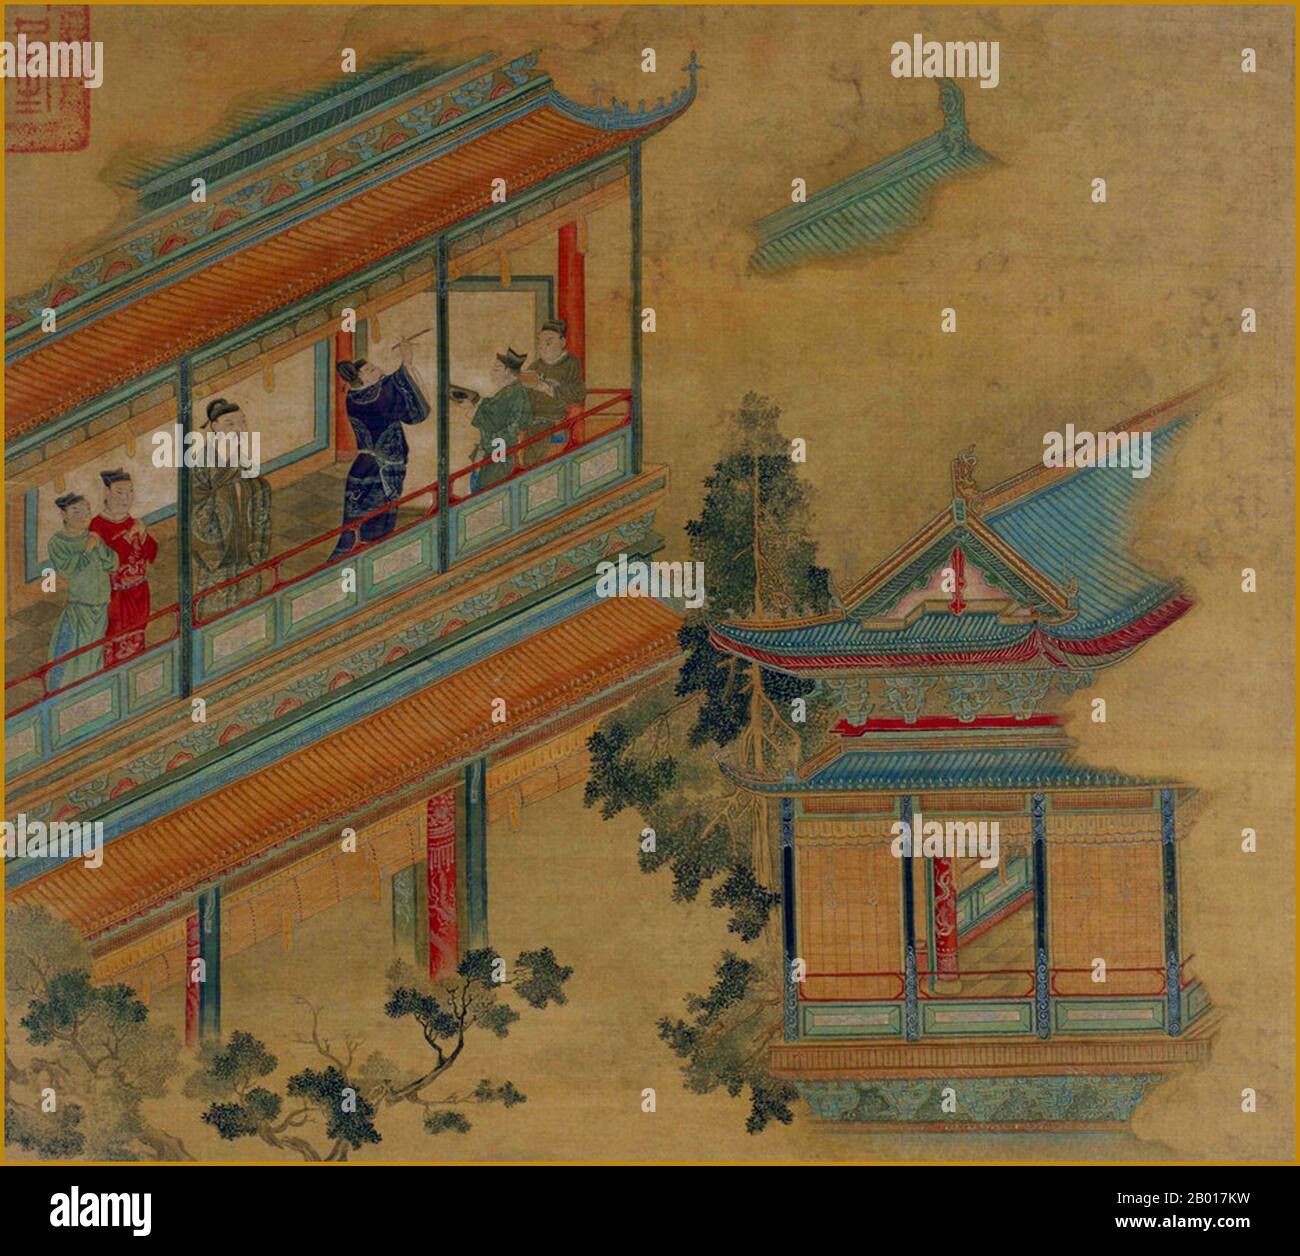 Cina: Li Shimin, imperatore Taizong di Tang (23 gennaio 599 – 10 luglio 649) esaminando un rotolo su un balcone. Particolare della pittura a grauola di Chen Shu (1660-1736), fine 17th secolo. L'imperatore Taizong di Tang (Wade-Giles: T'ai-Tsung), nome personale Lǐ Shìmín, era il secondo imperatore della dinastia Tang della Cina, che governava dal 626 al 649. Mentre incoraggiò suo padre, li Yuan (in seguito imperatore Gaozu), a levarsi contro il dominio della dinastia sui a Taiyuan nel 617 e successivamente a sconfiggere molti dei suoi rivali più importanti, fu cerimonialmente considerato come co-fondatore della dinastia accanto all'imperatore Gaozu. Foto Stock